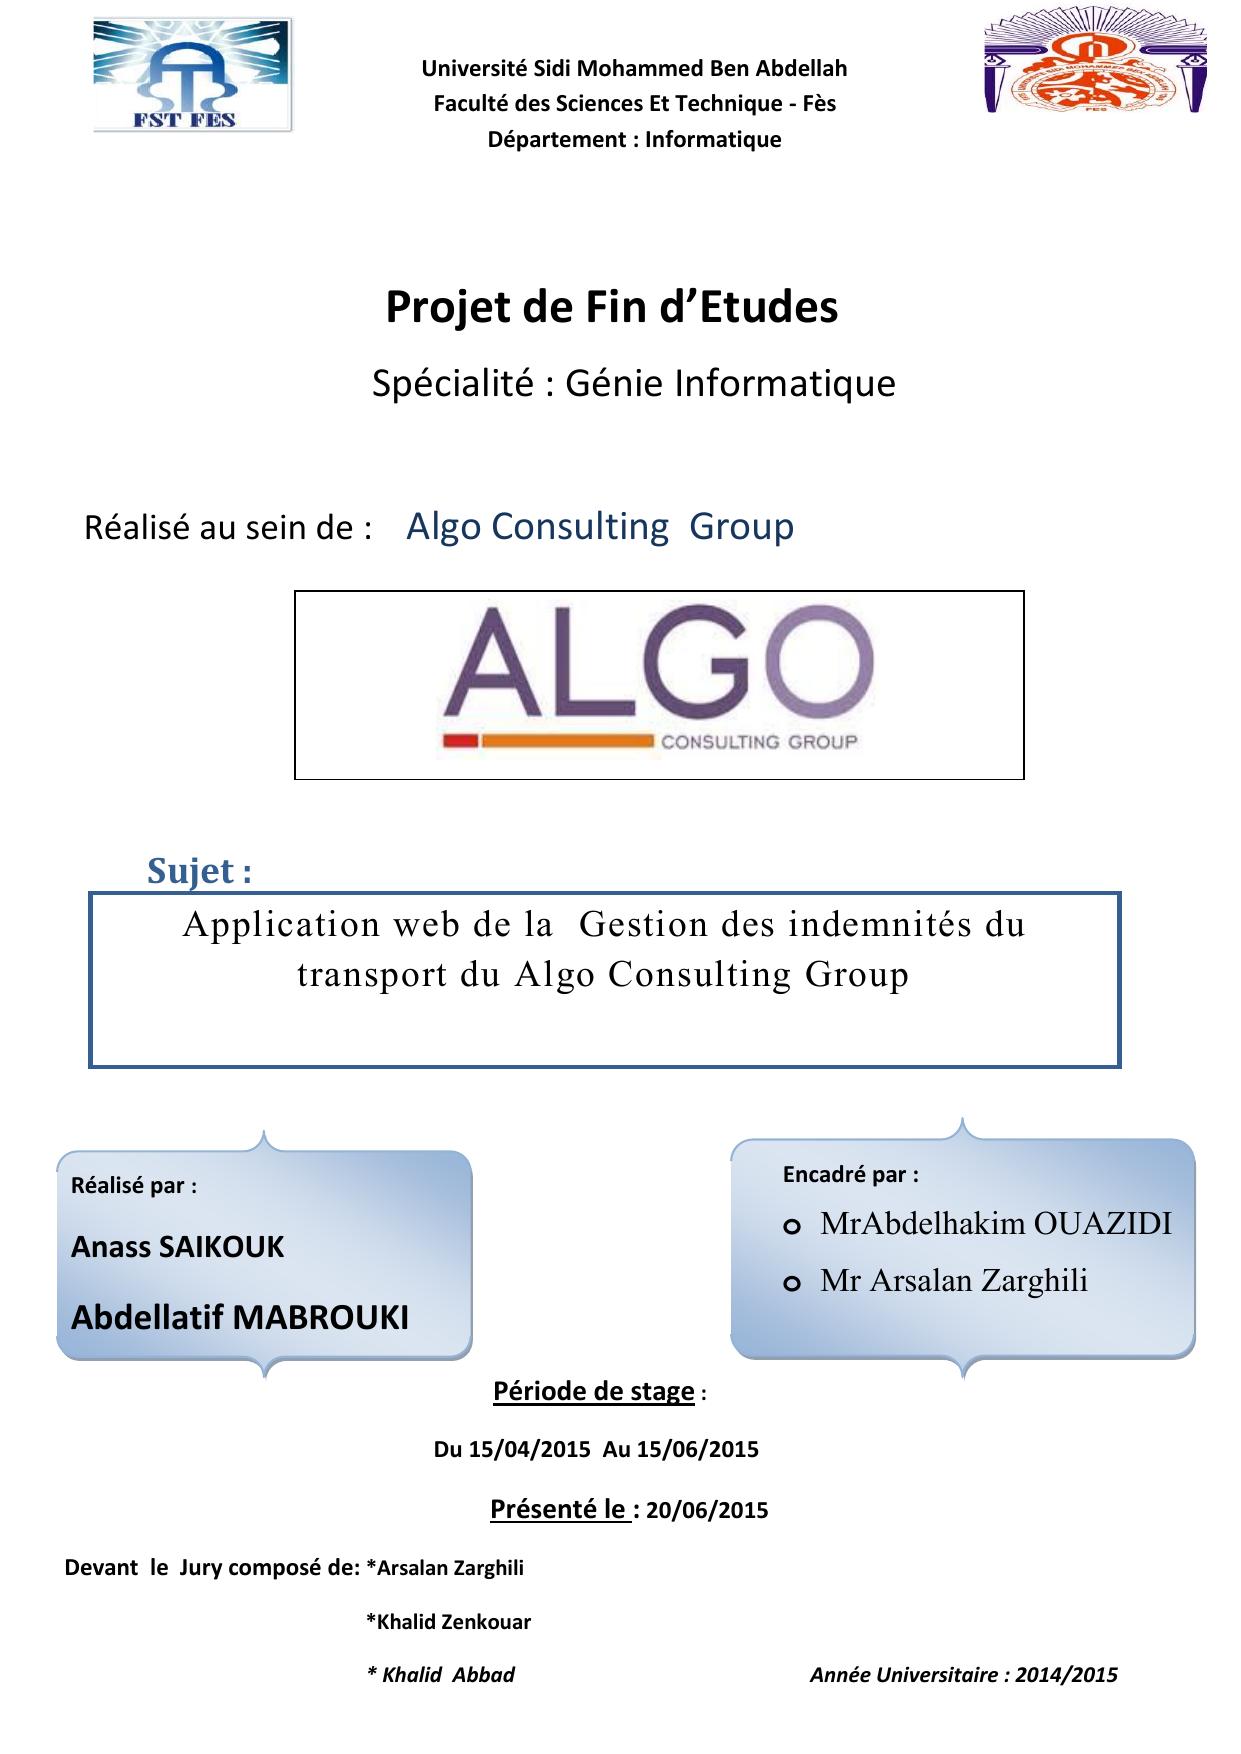 Application web de la Gestion des indemnités du transport du Algo Consulting Group